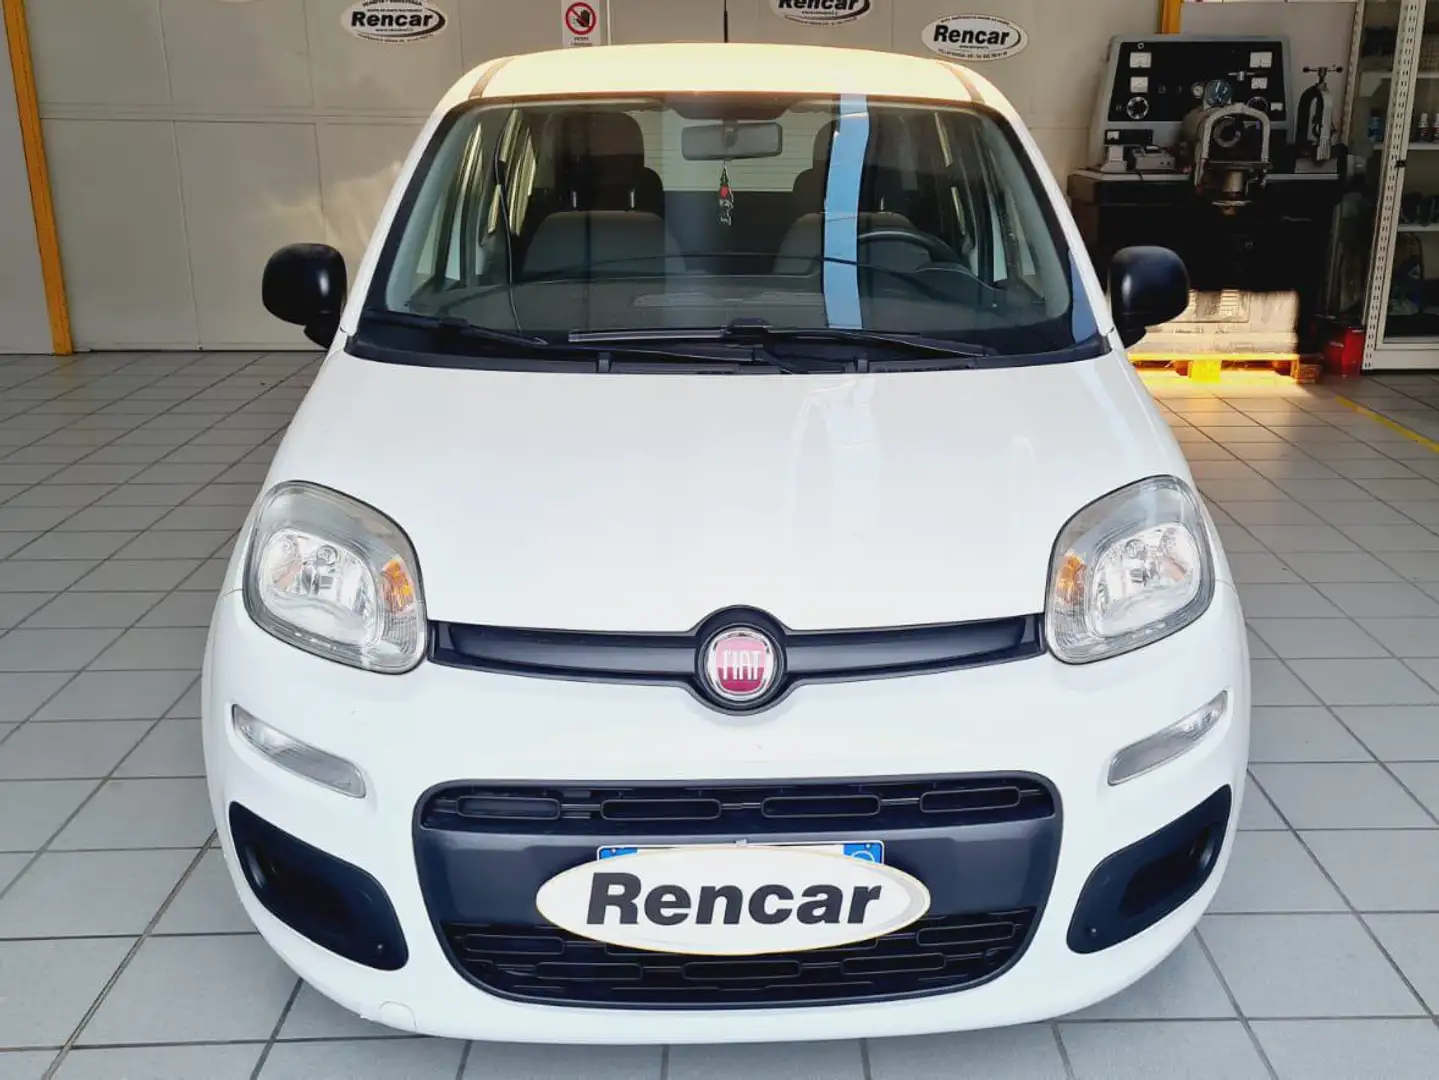 usato Fiat Panda City car a Villafranca - Verona - Vr per € 10.300,-